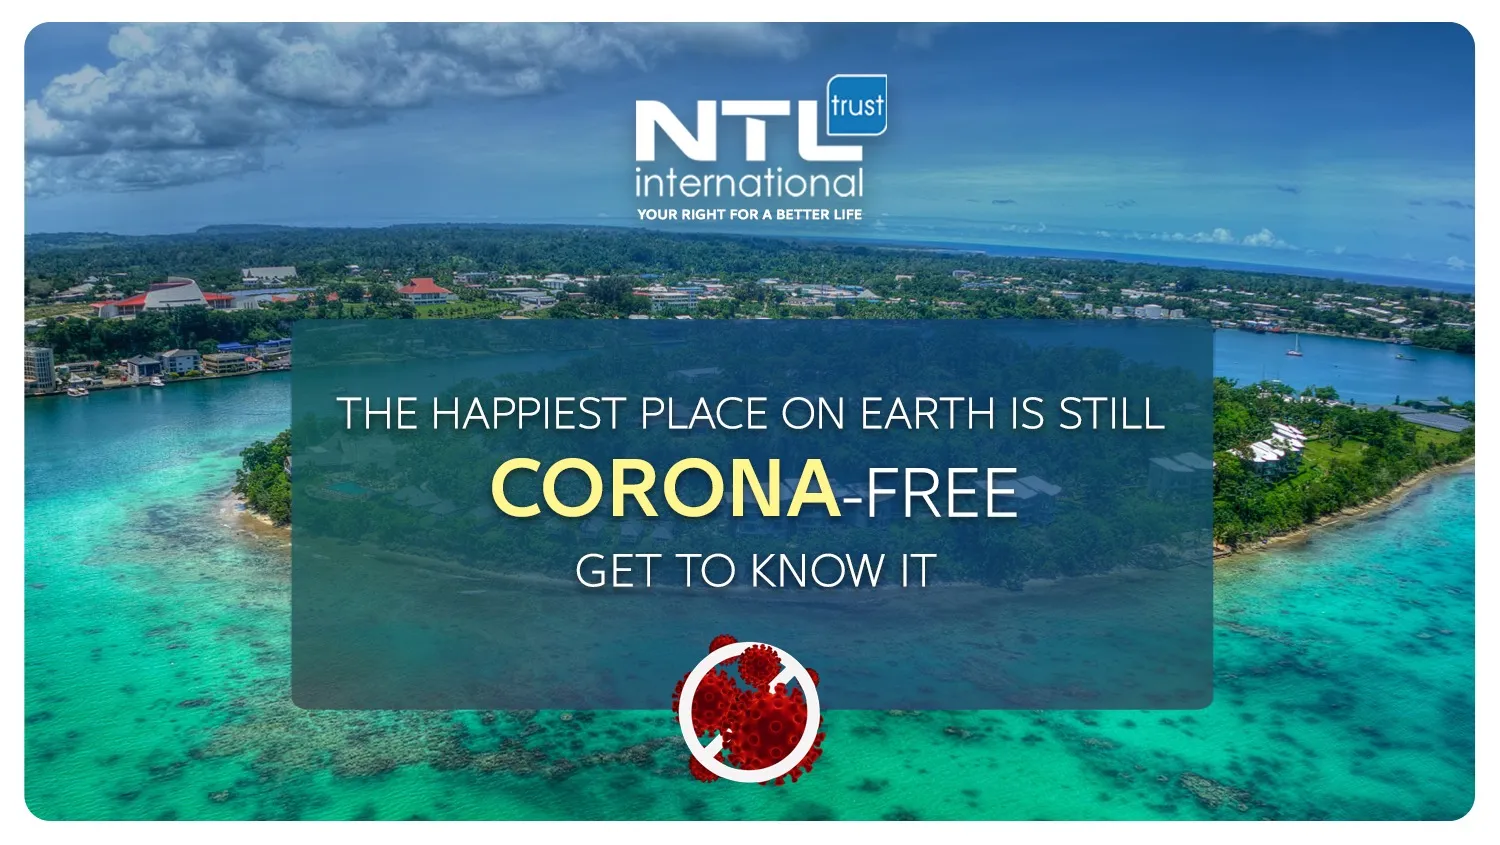 Vanuatu is still corona-free